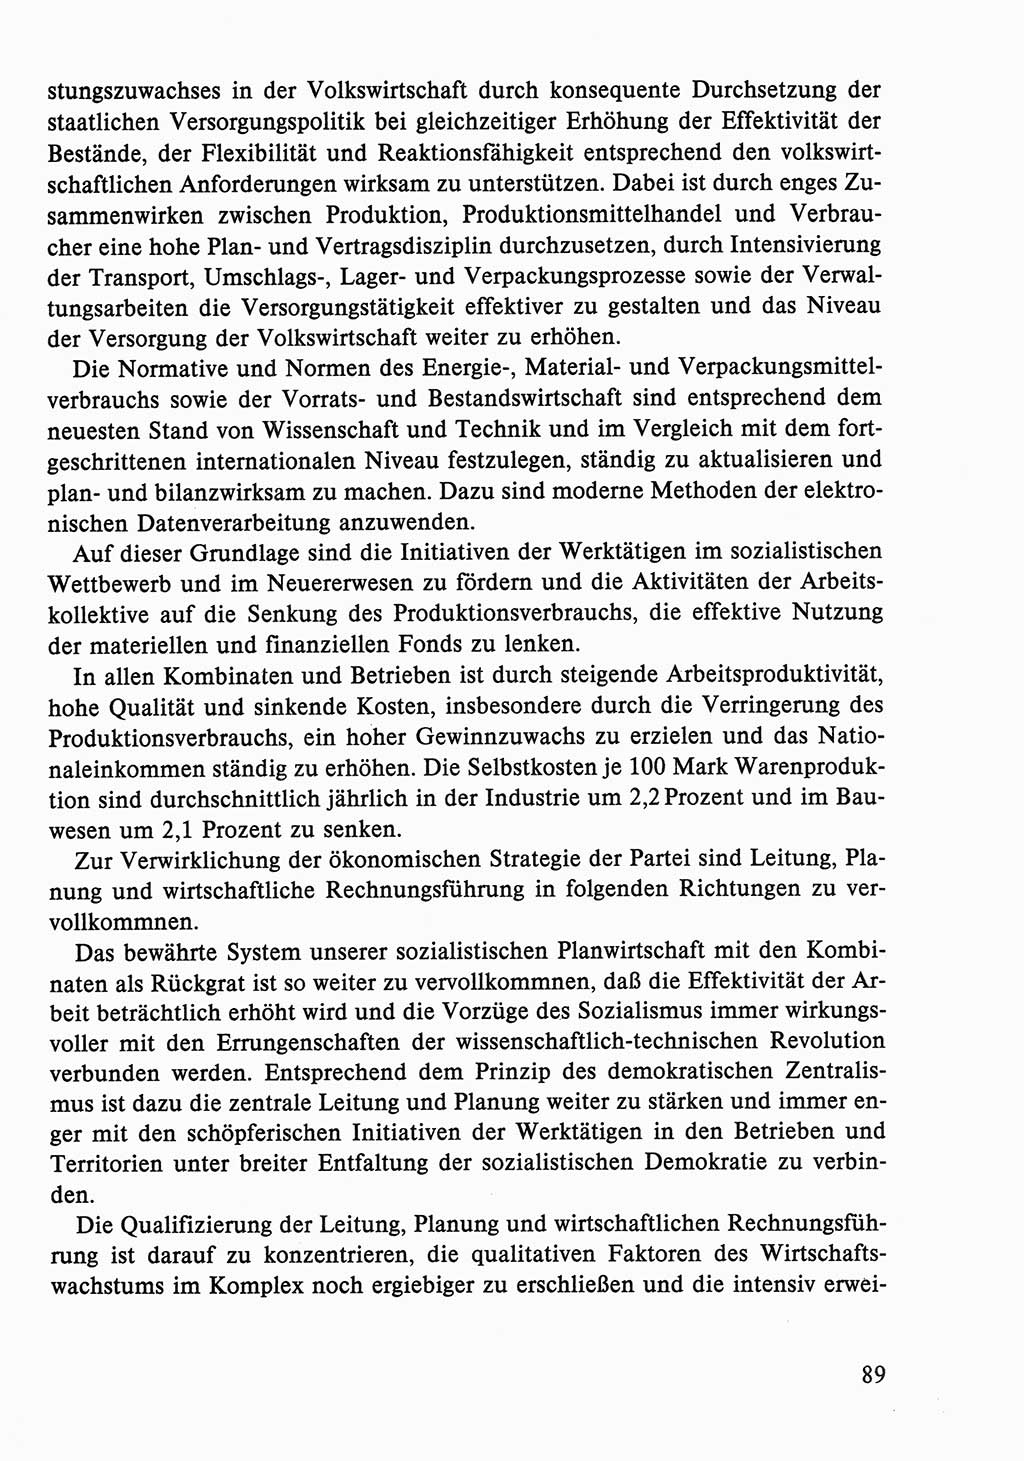 Dokumente der Sozialistischen Einheitspartei Deutschlands (SED) [Deutsche Demokratische Republik (DDR)] 1986-1987, Seite 89 (Dok. SED DDR 1986-1987, S. 89)